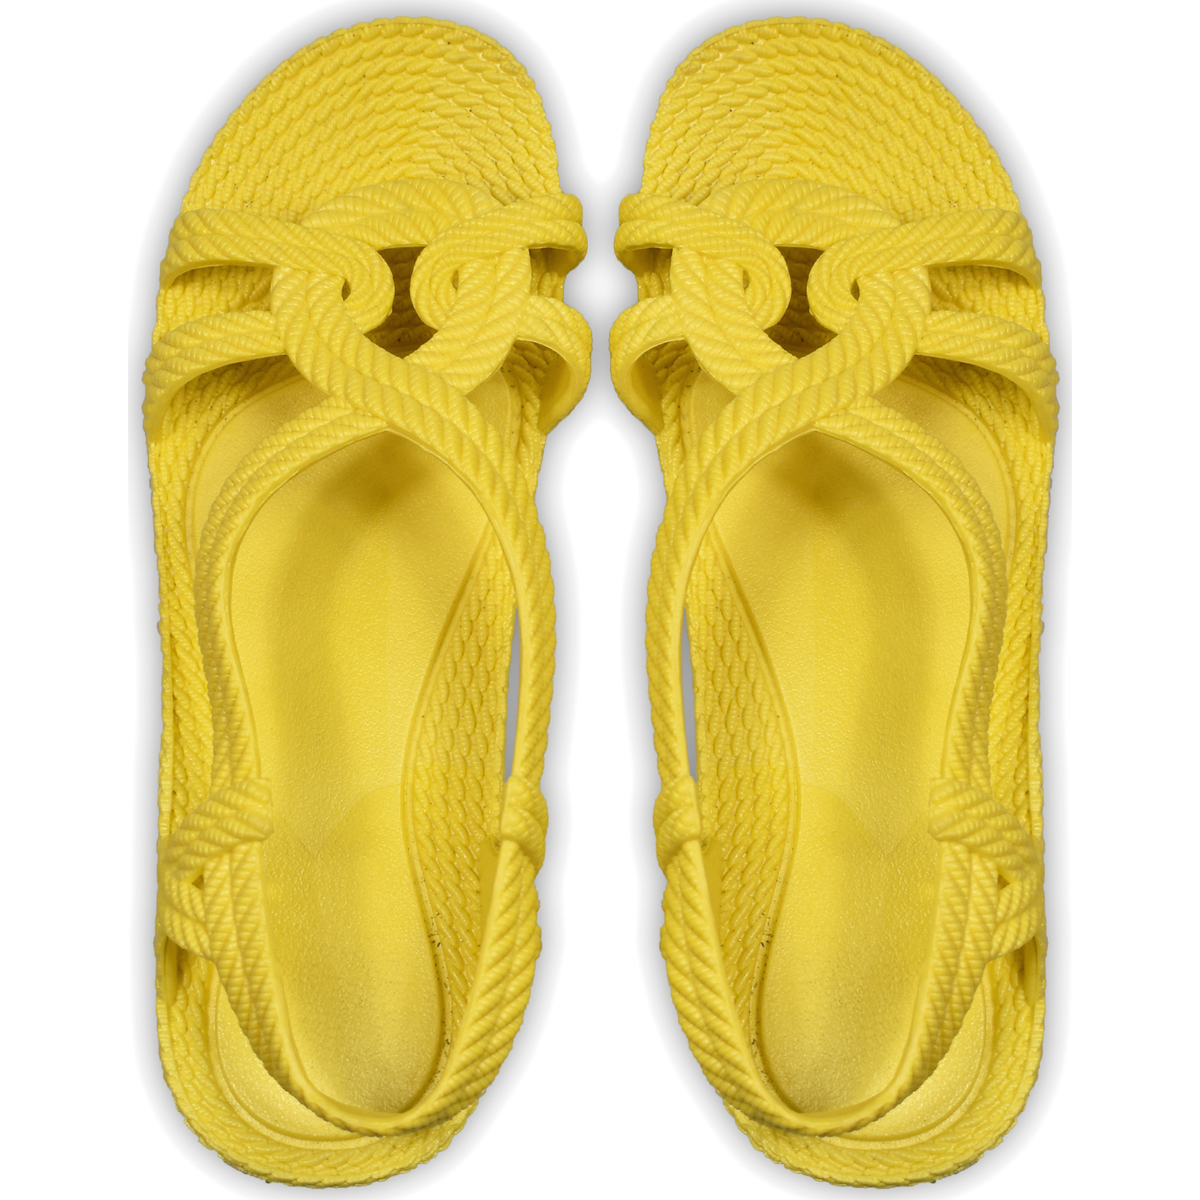 Zapatos Niños Chanclas Brasileras Esmirna Amarillo